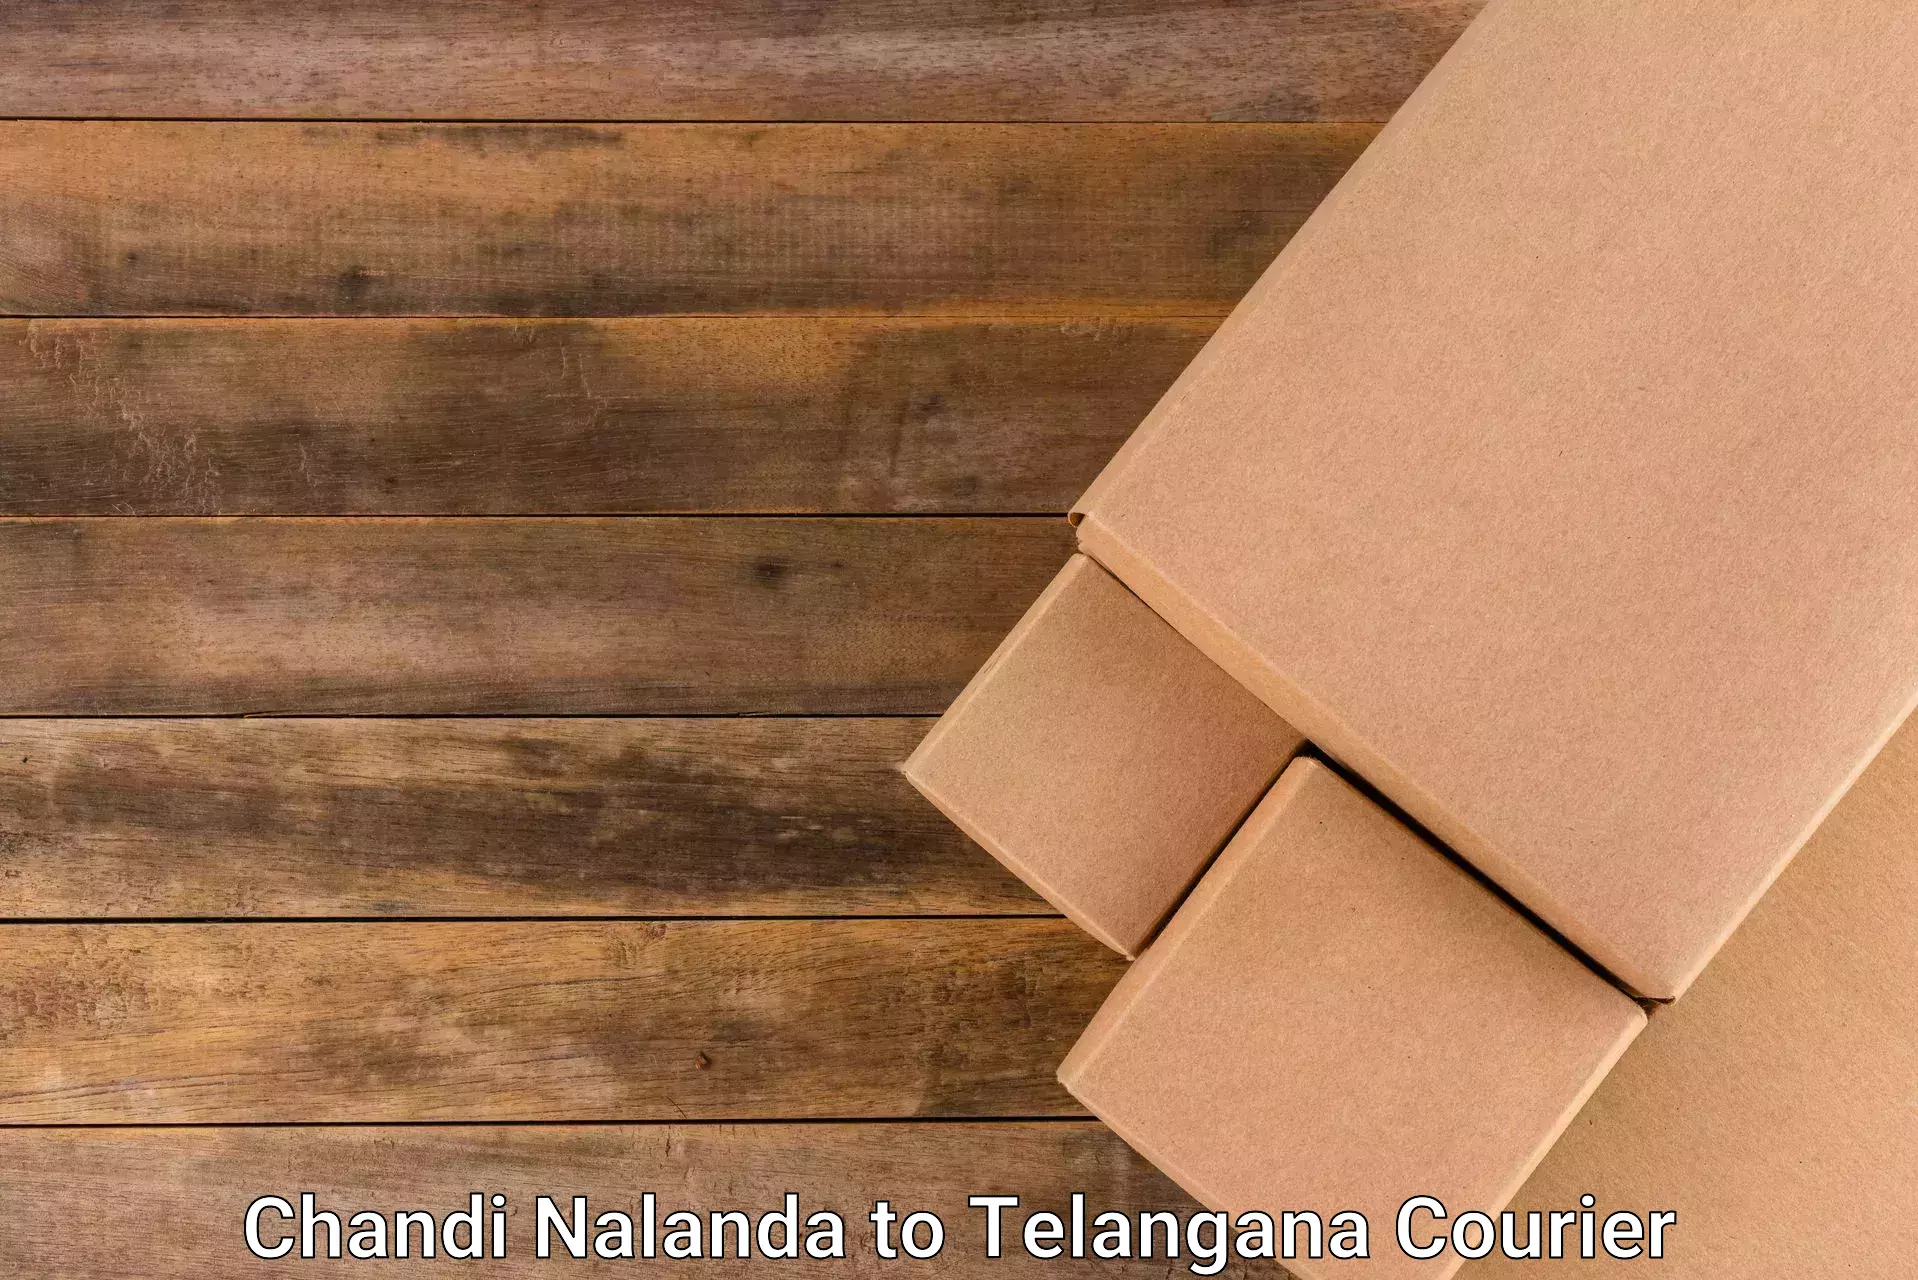 Express courier capabilities in Chandi Nalanda to Jadcherla